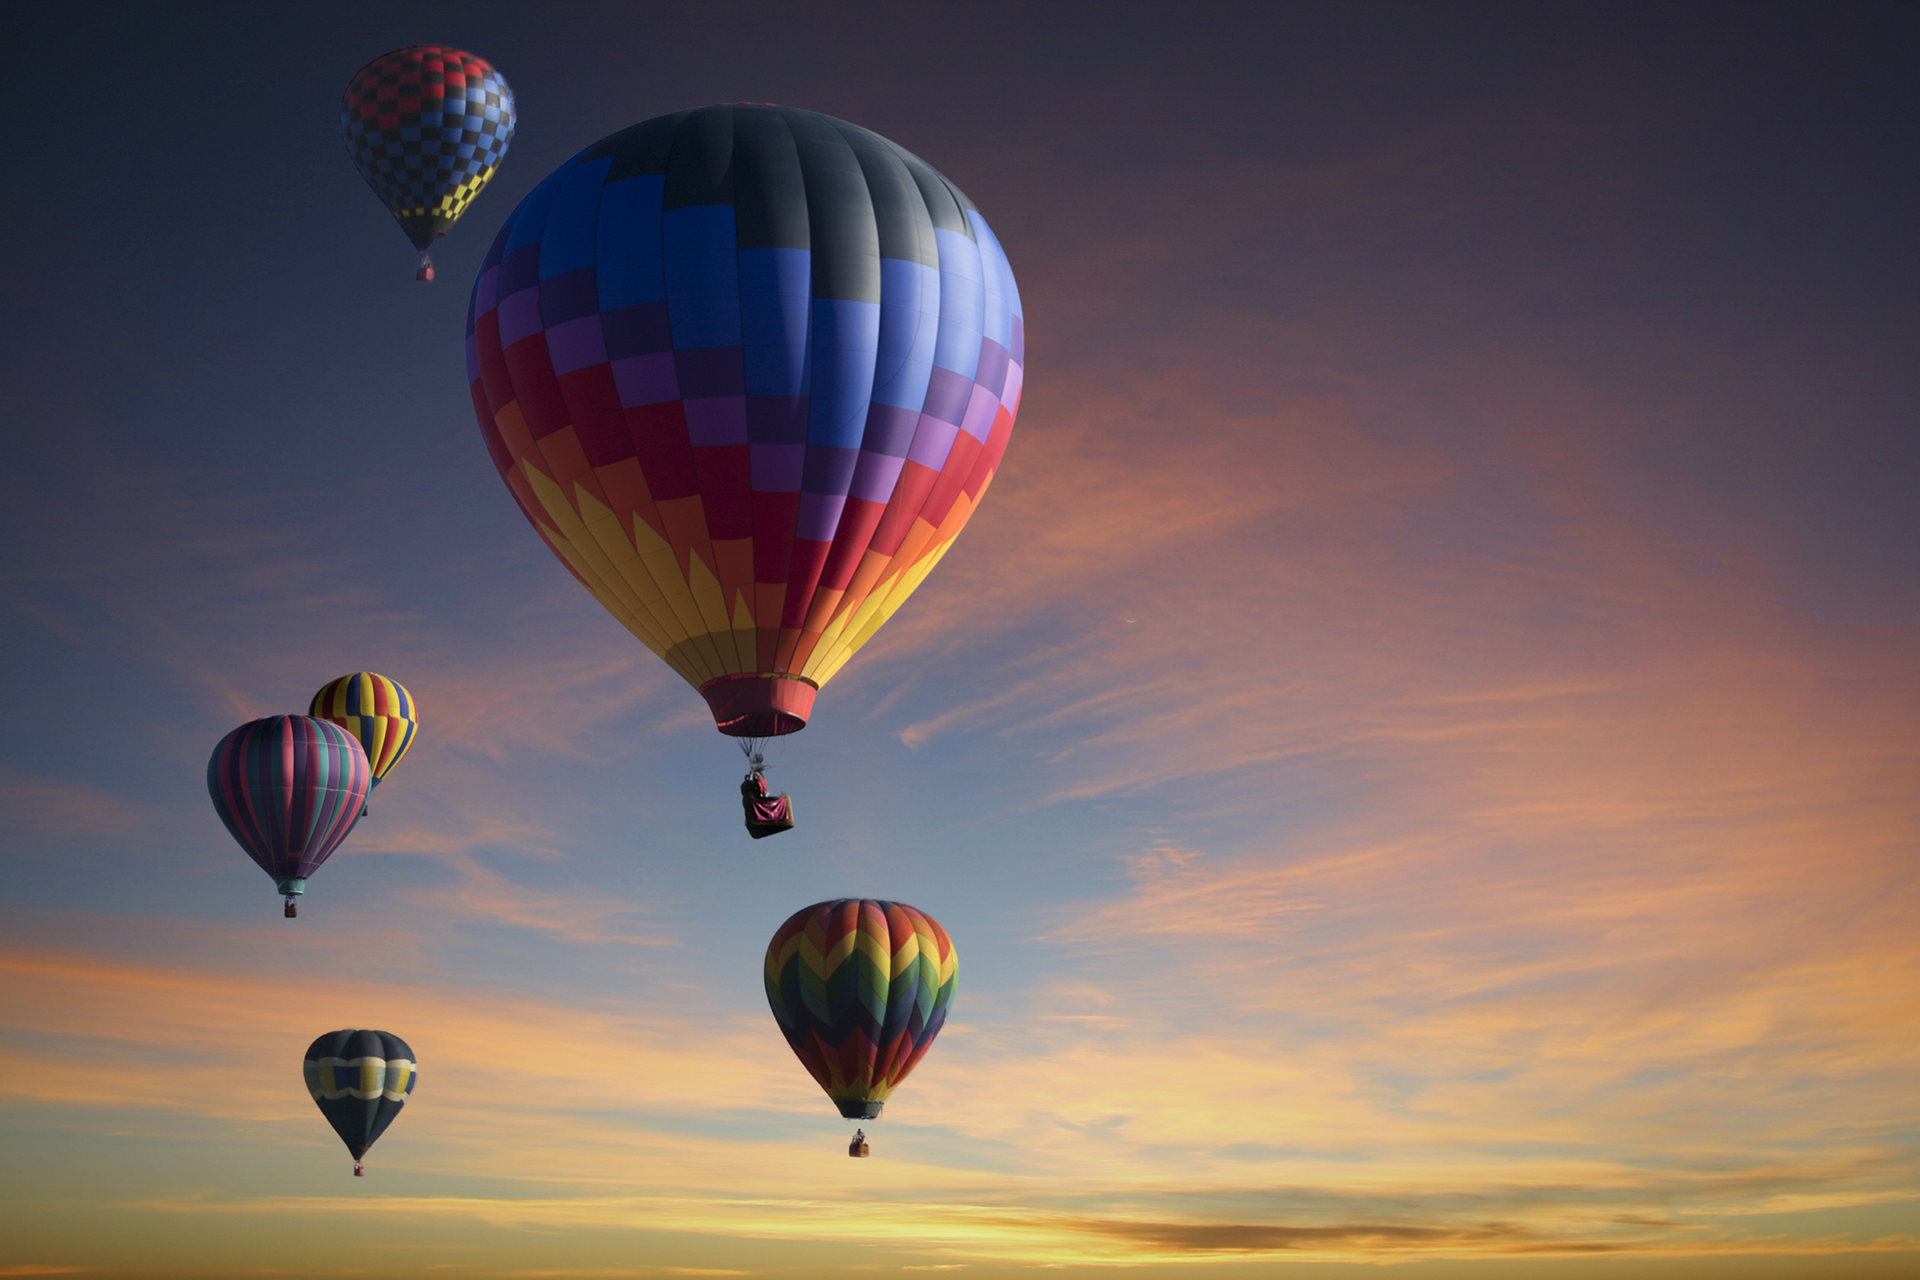 Na fotografii widać sześć kolorowych balonów, które wzniosły się w powietrze.